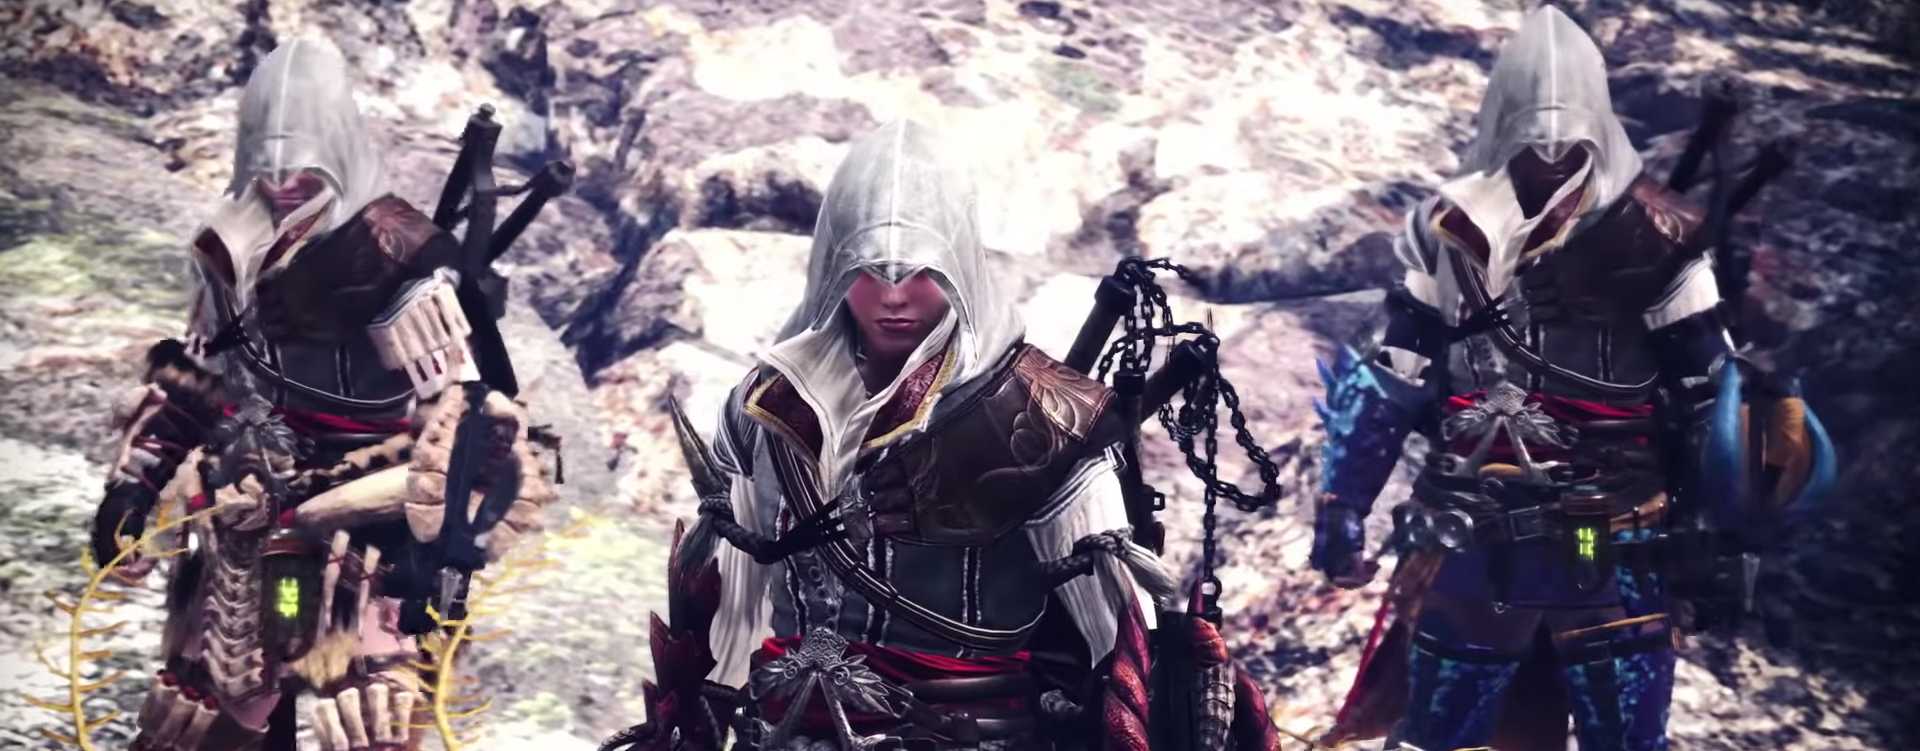 Assassin’s Creed hat sich heimlich in Monster Hunter World geschlichen